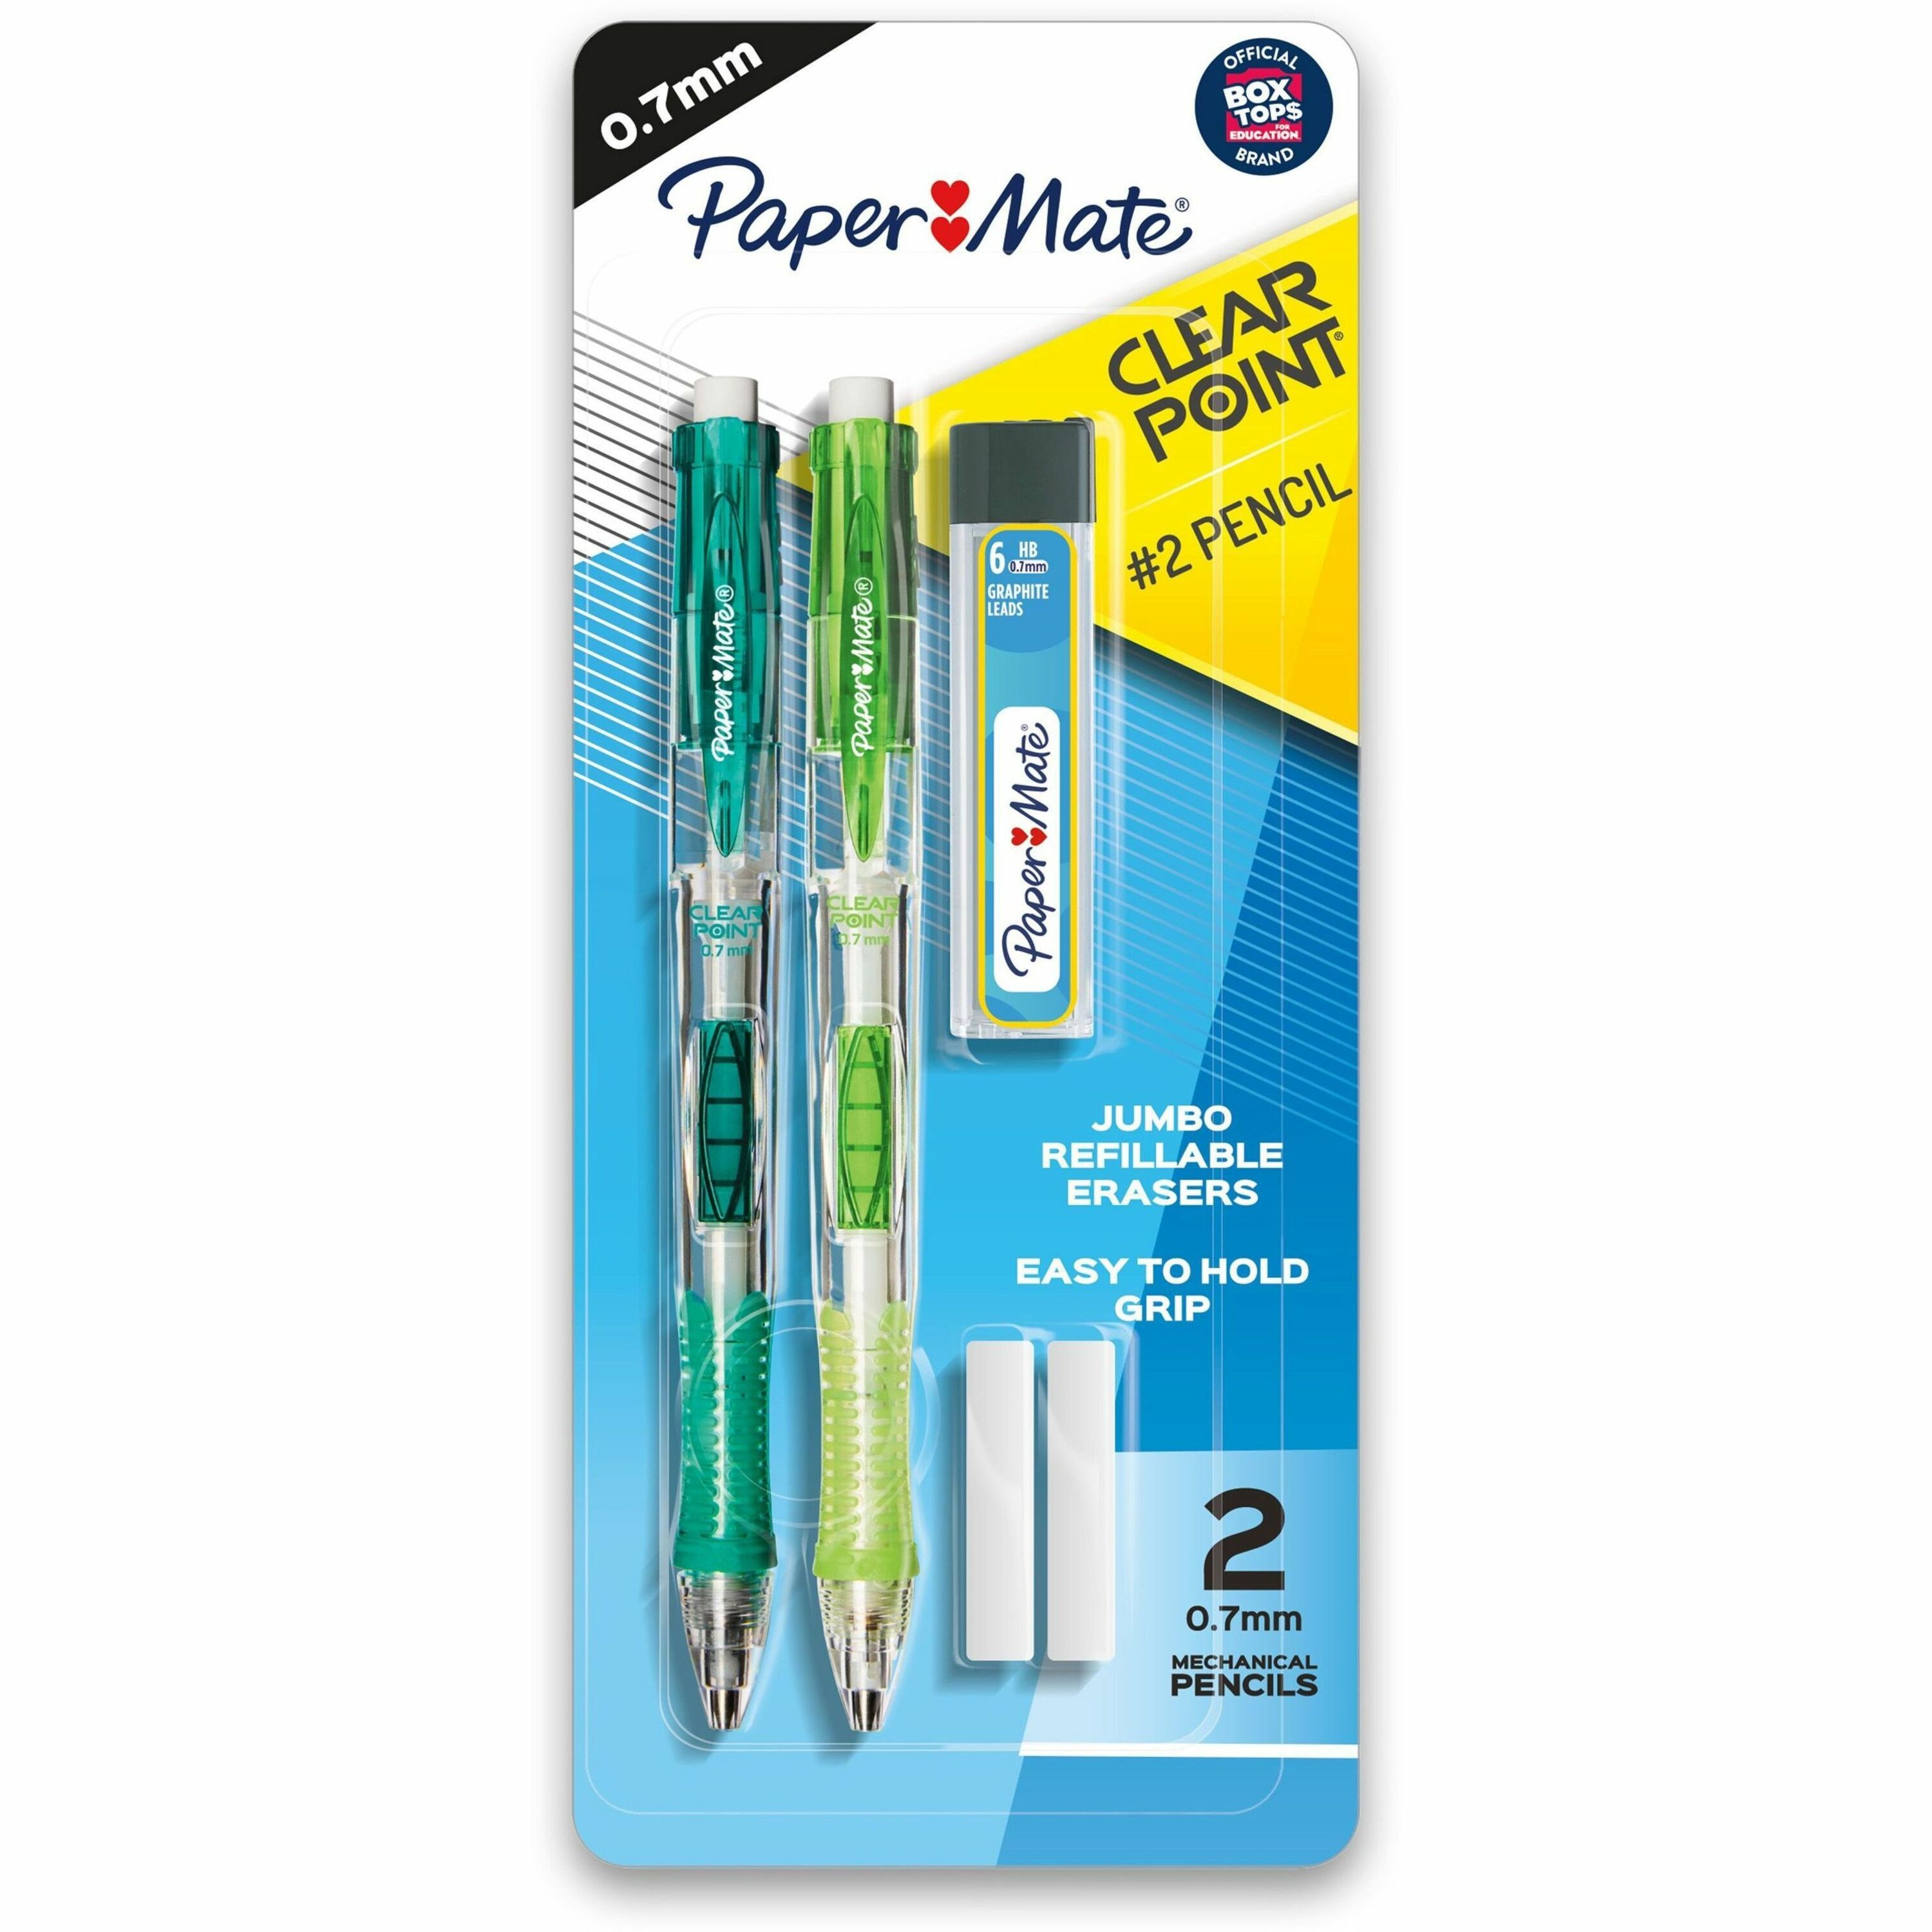 Multicolor Color Pen 36 Pcs Fun Pens Note Taking Office